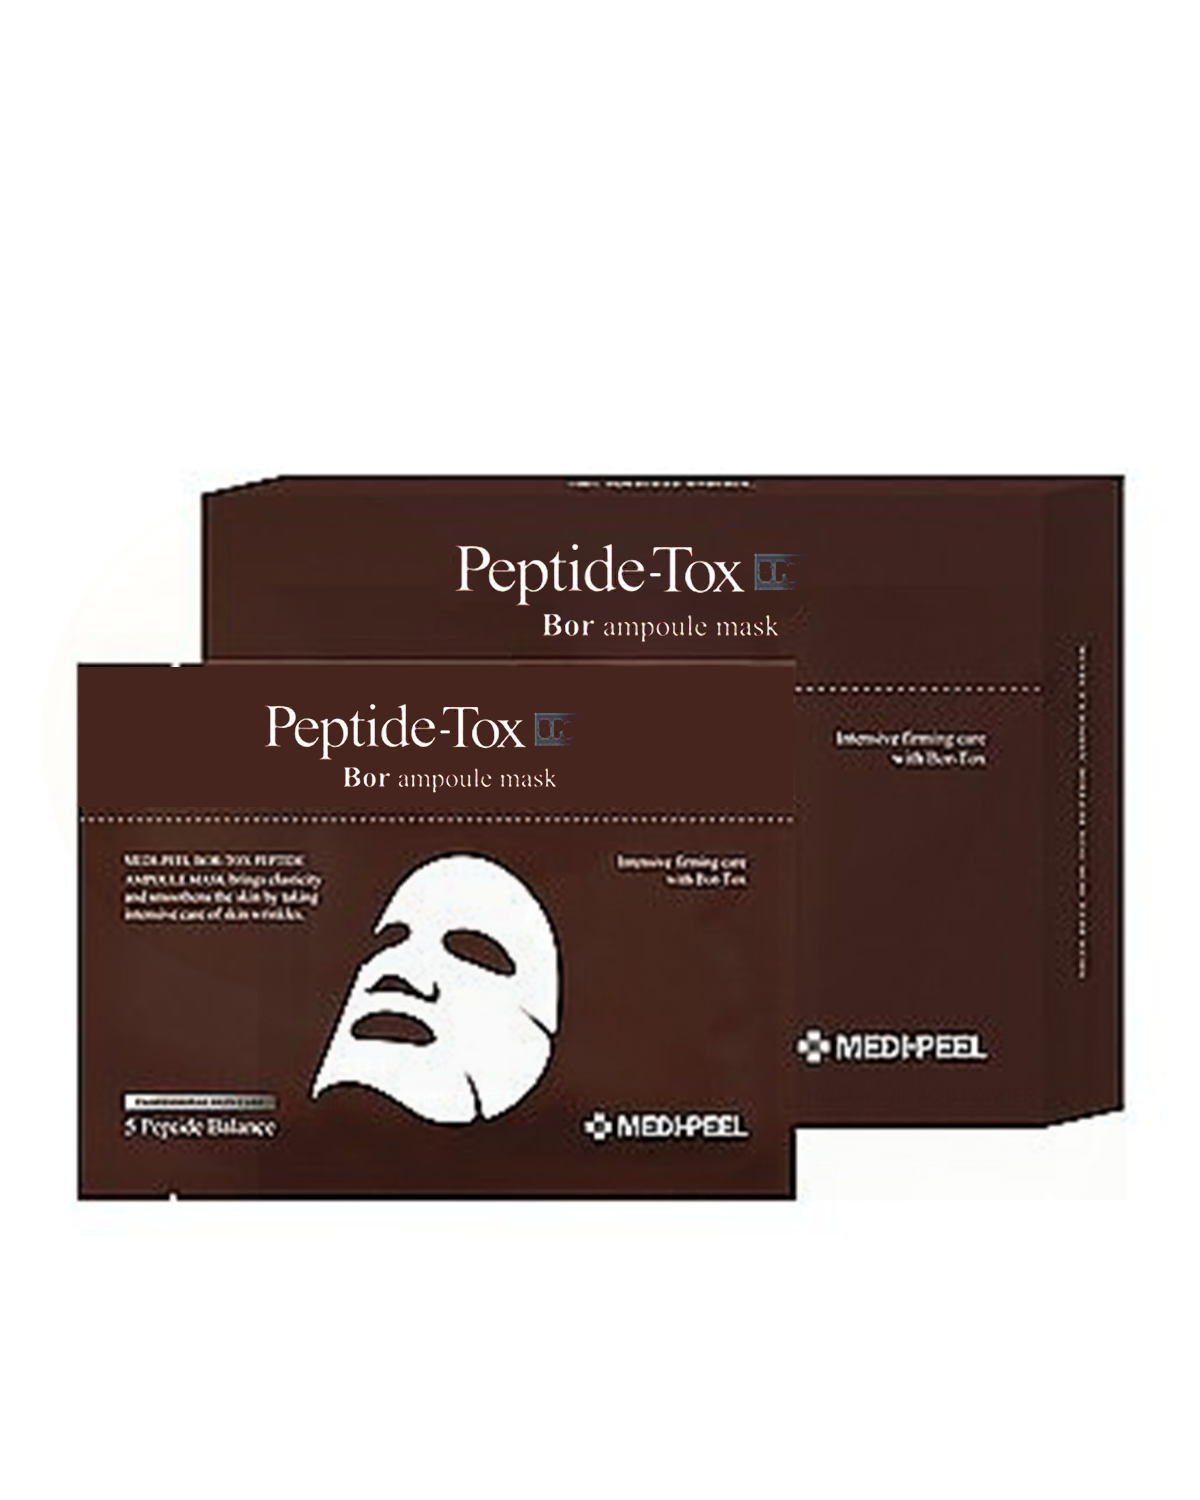 MEDI-PEEL Pepti-Tox Ampoule Mask 10ea x 30ml